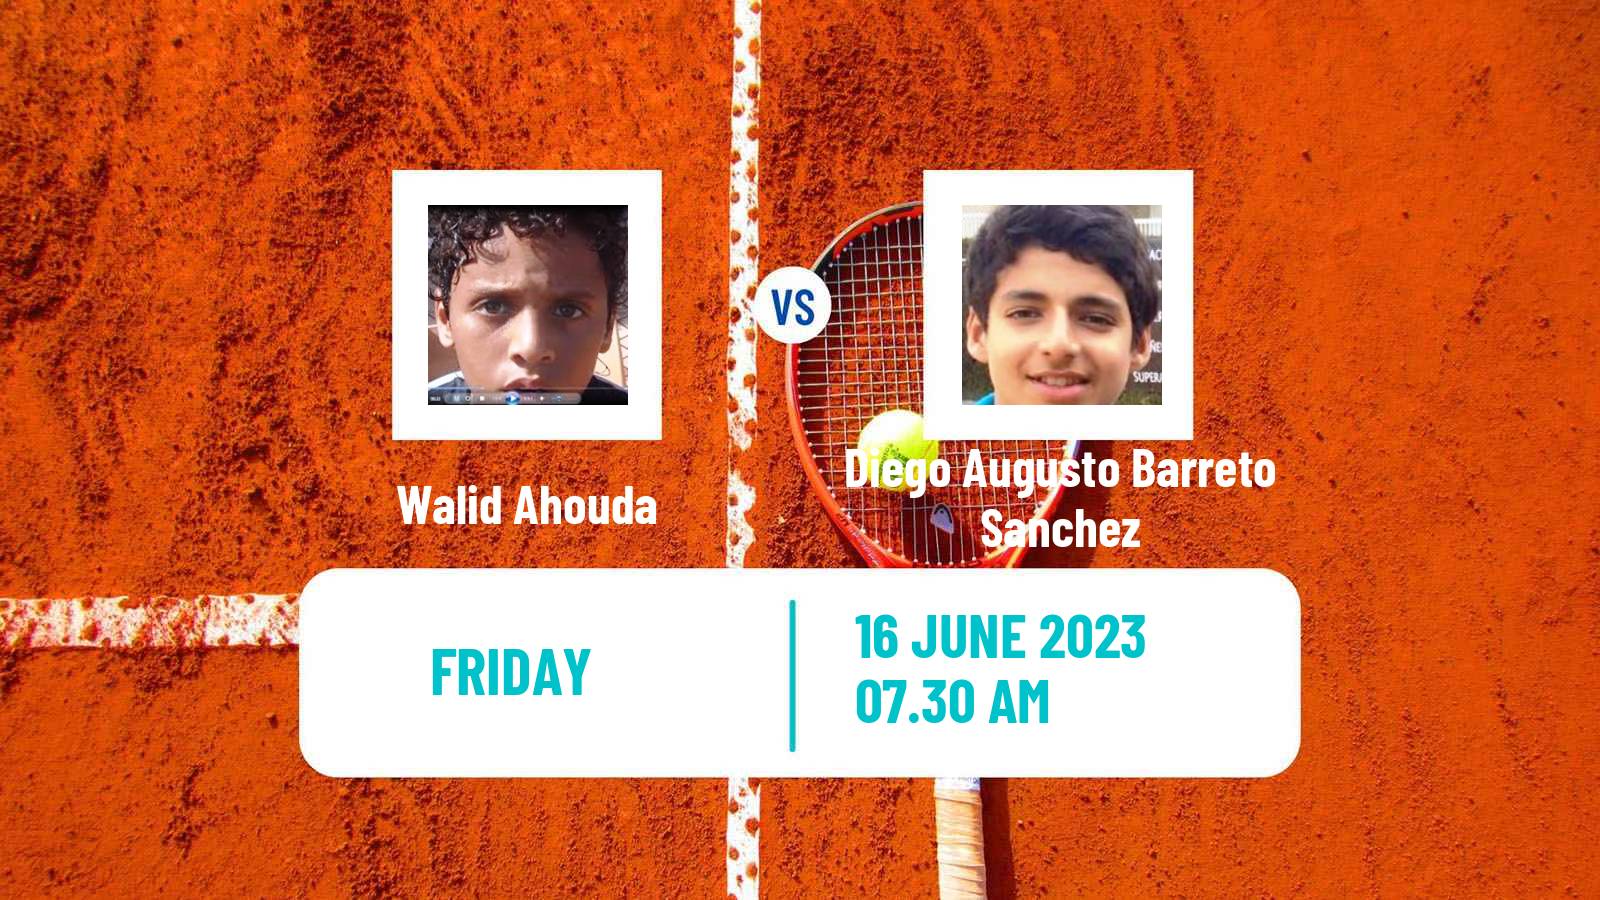 Tennis ITF M15 Rabat Men Walid Ahouda - Diego Augusto Barreto Sanchez